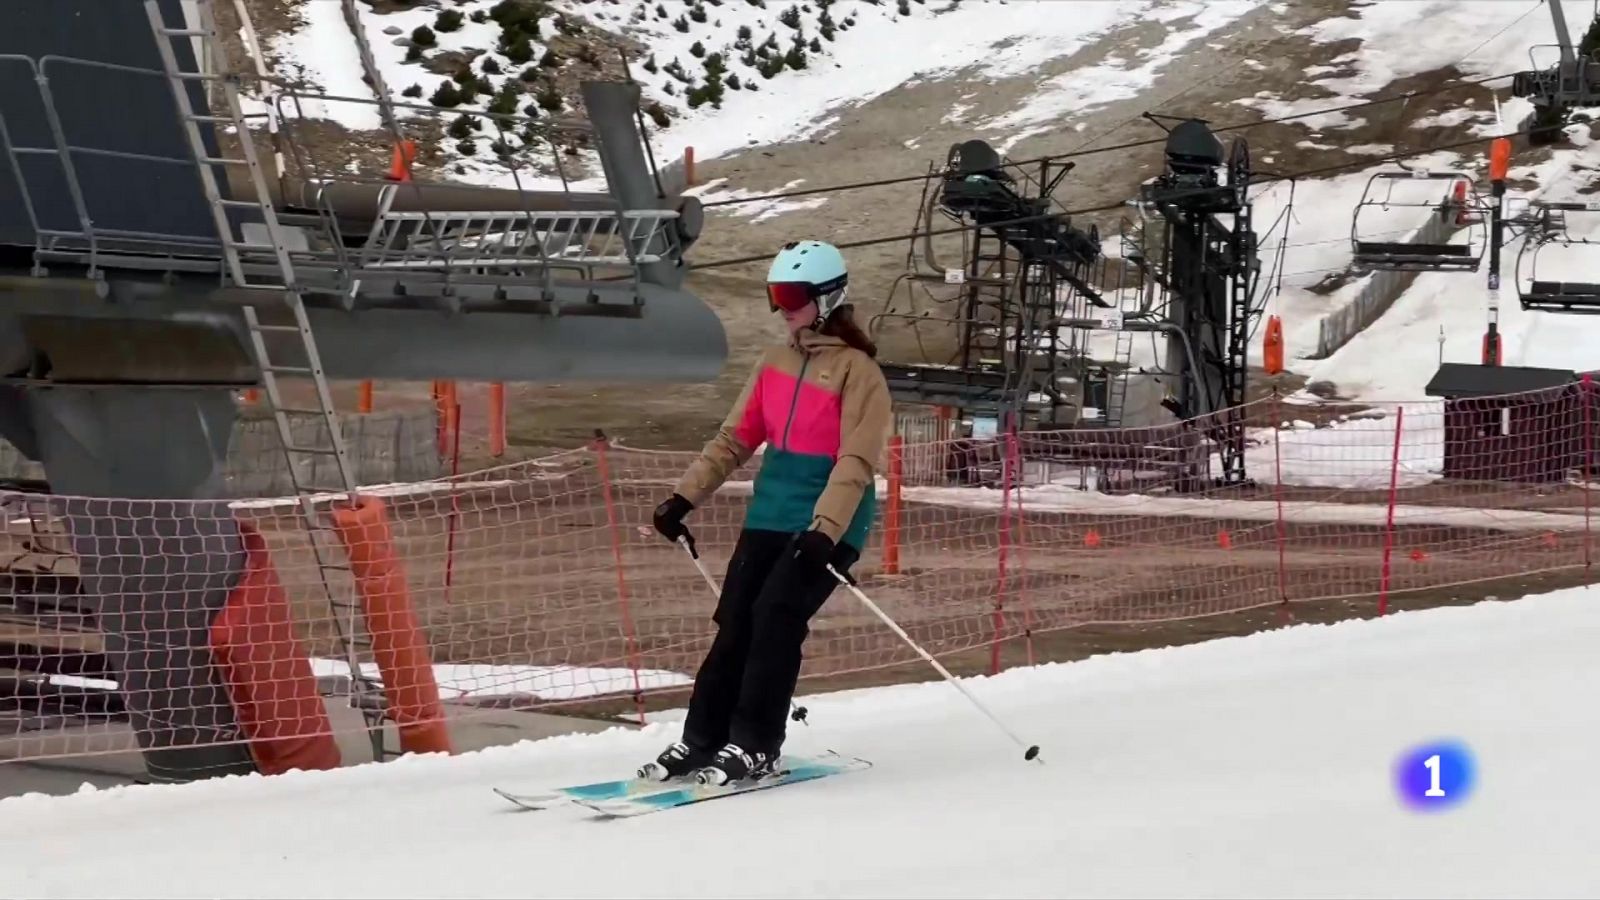 Estacions d'esquí estiren la temporada gràcies a les nevades